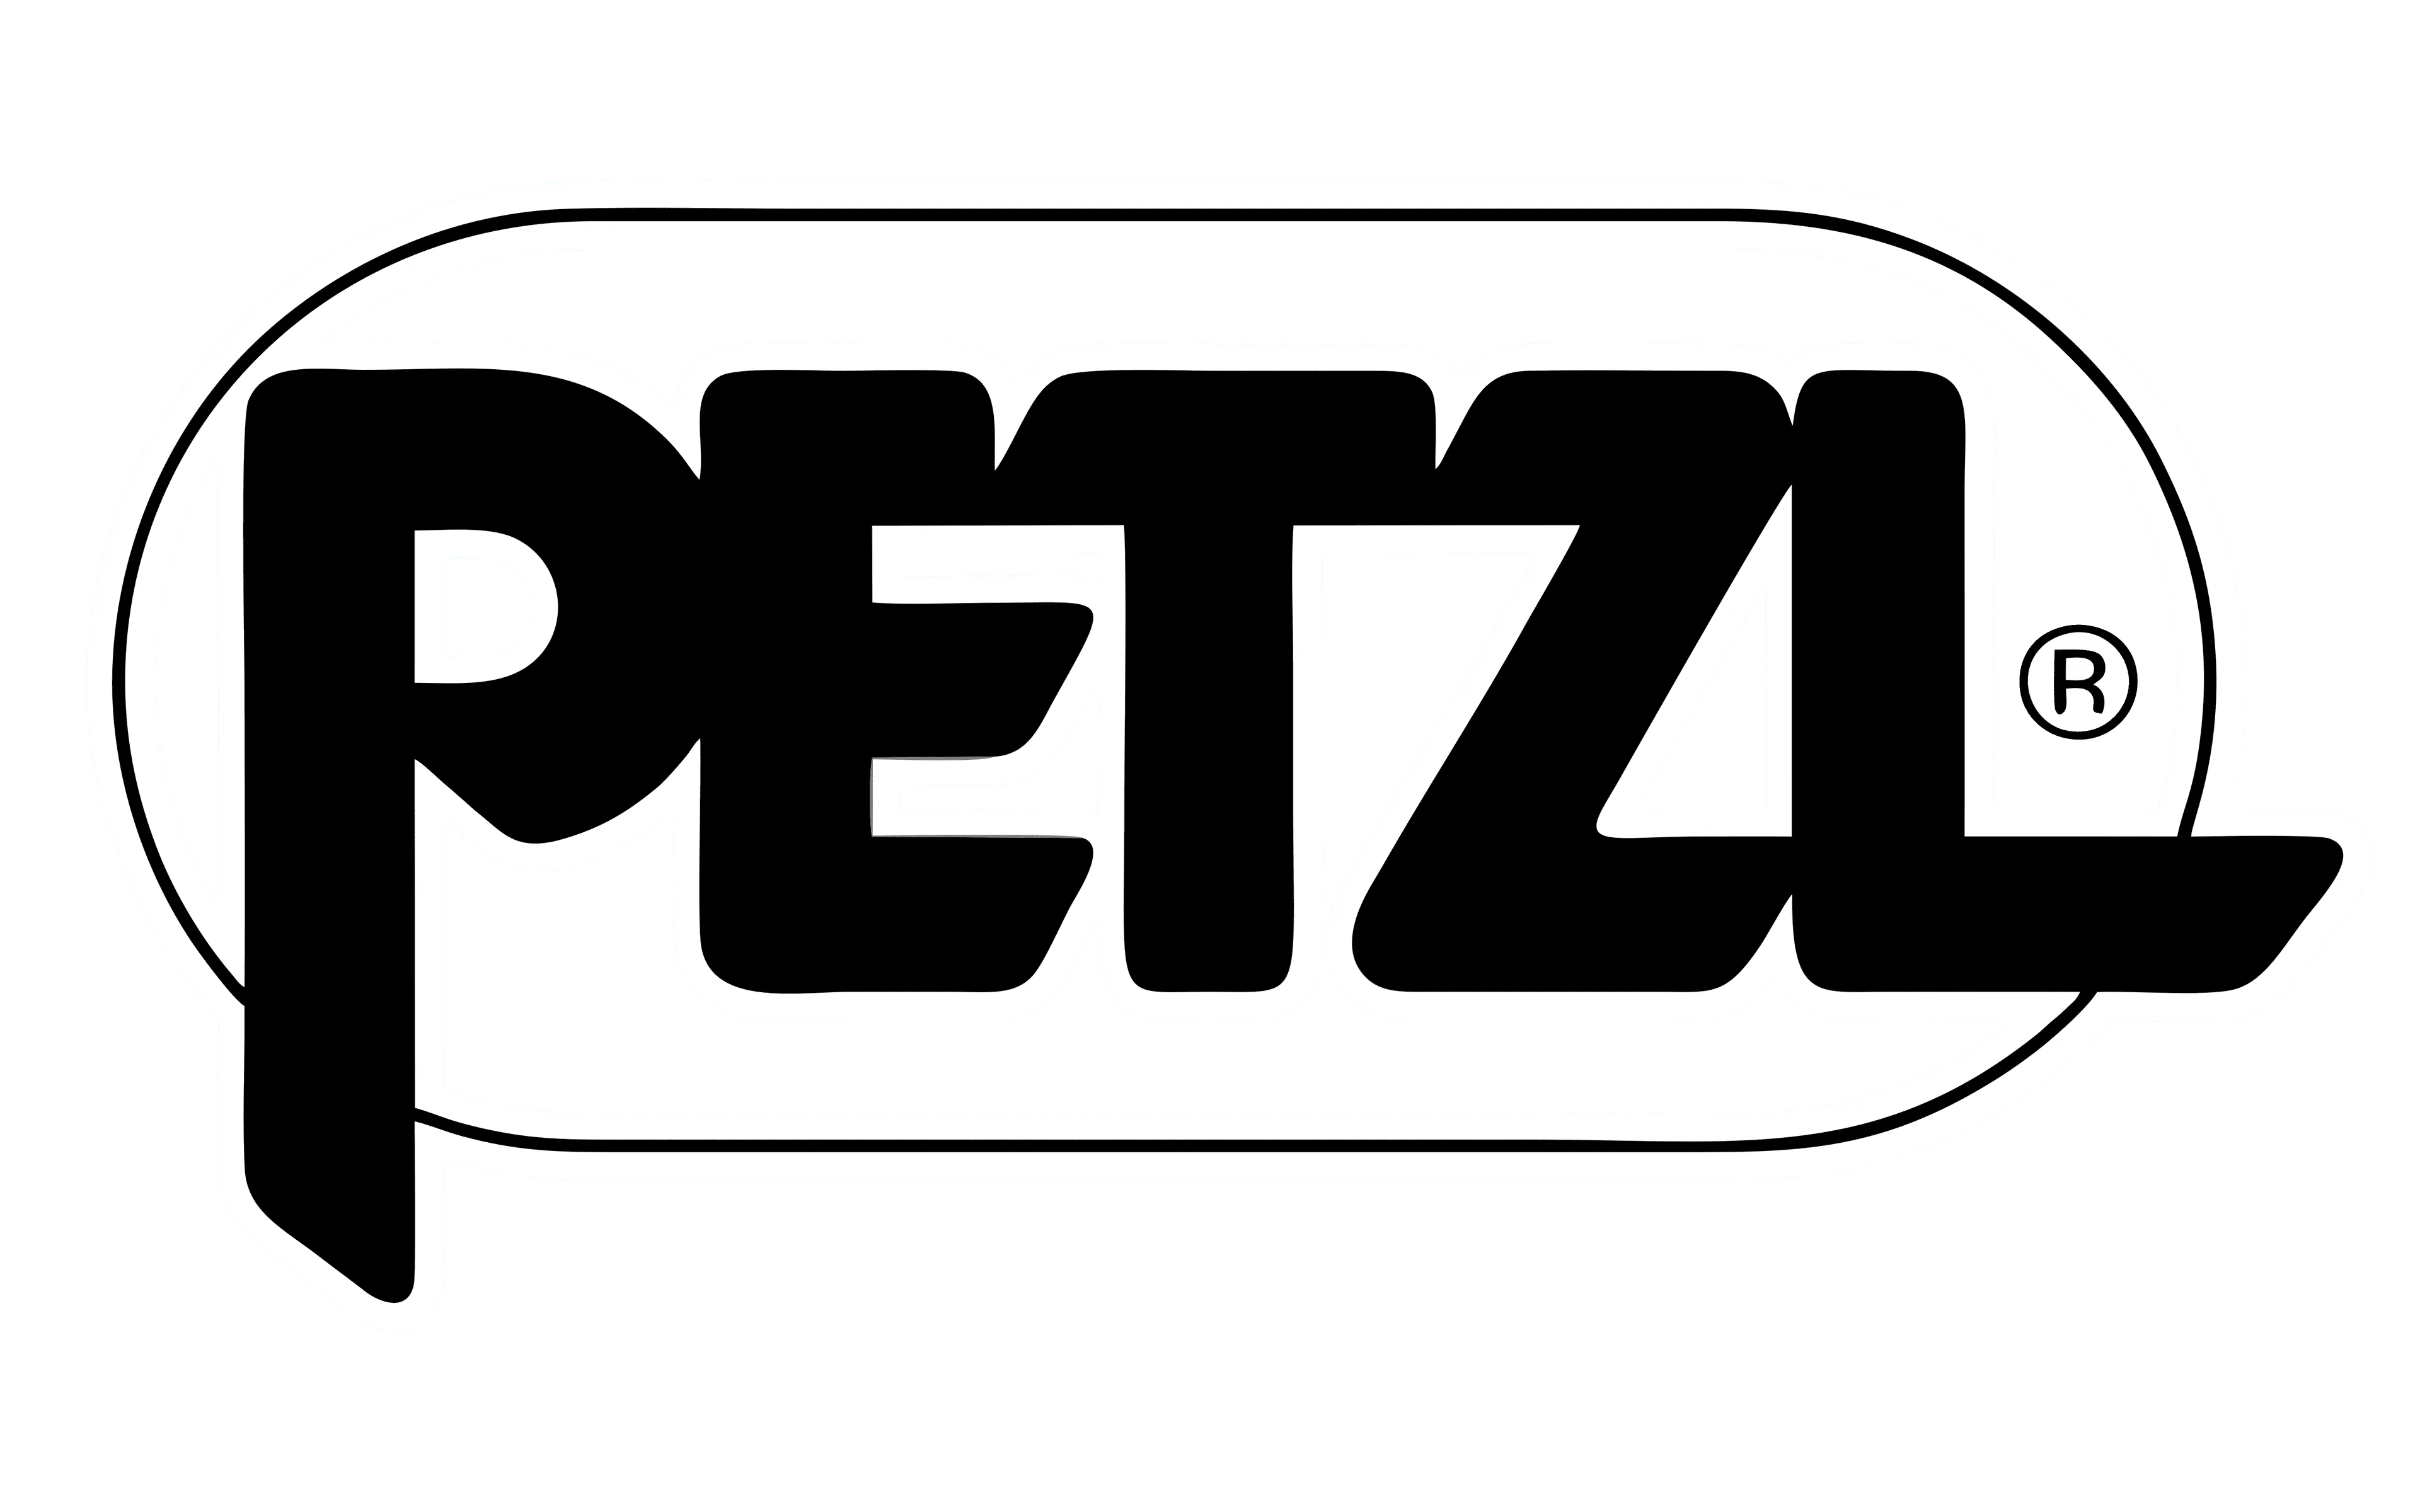 Logo for petzl